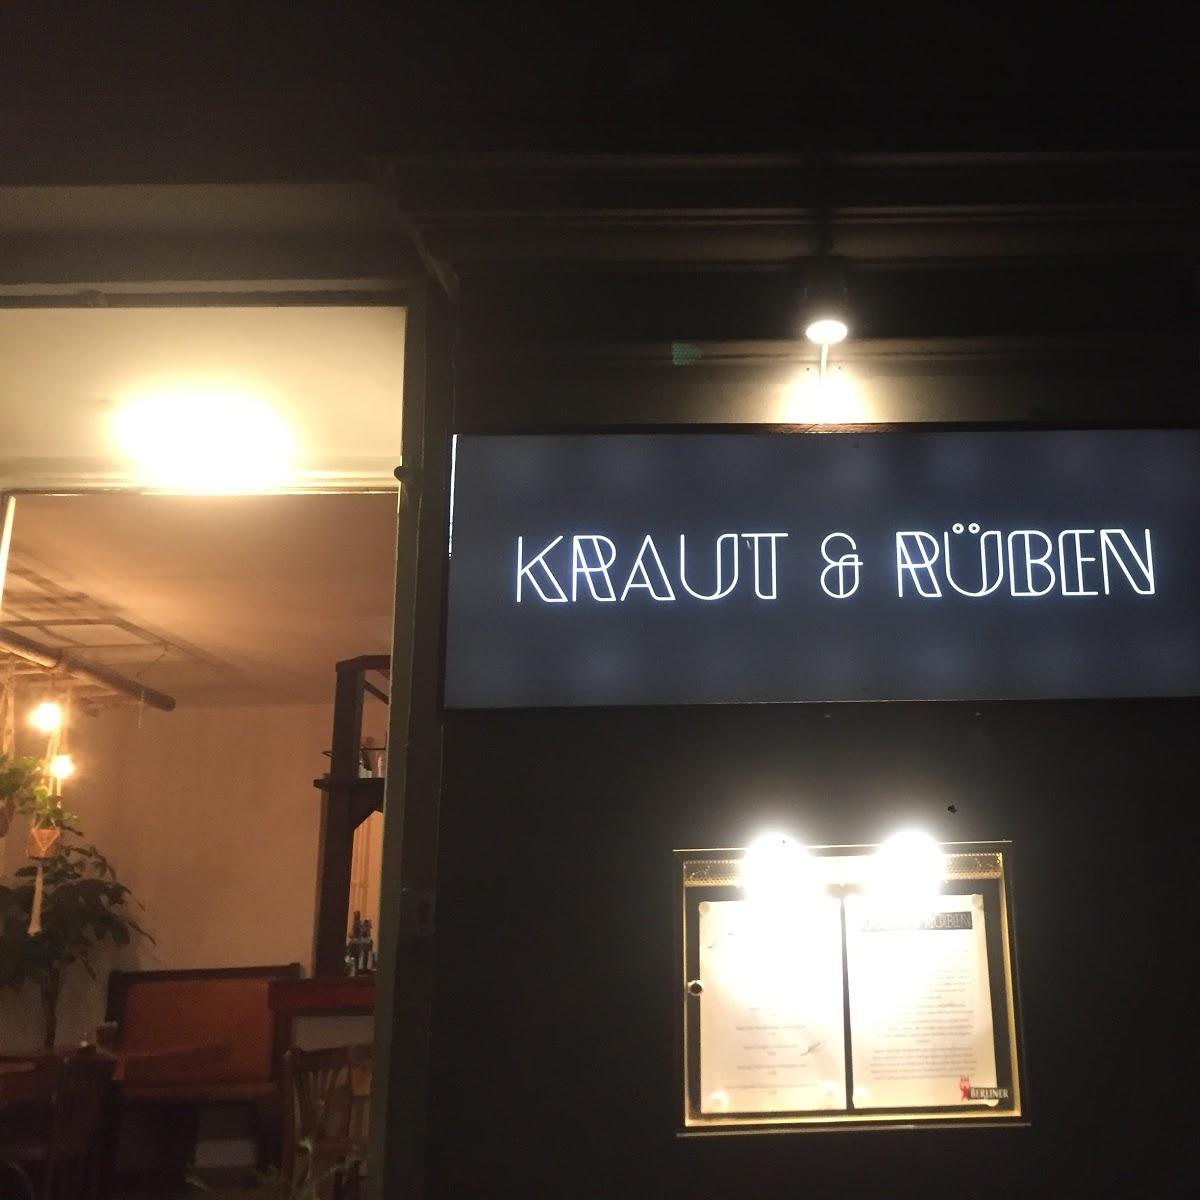 Restaurant "Kraut & Rüben" in Berlin